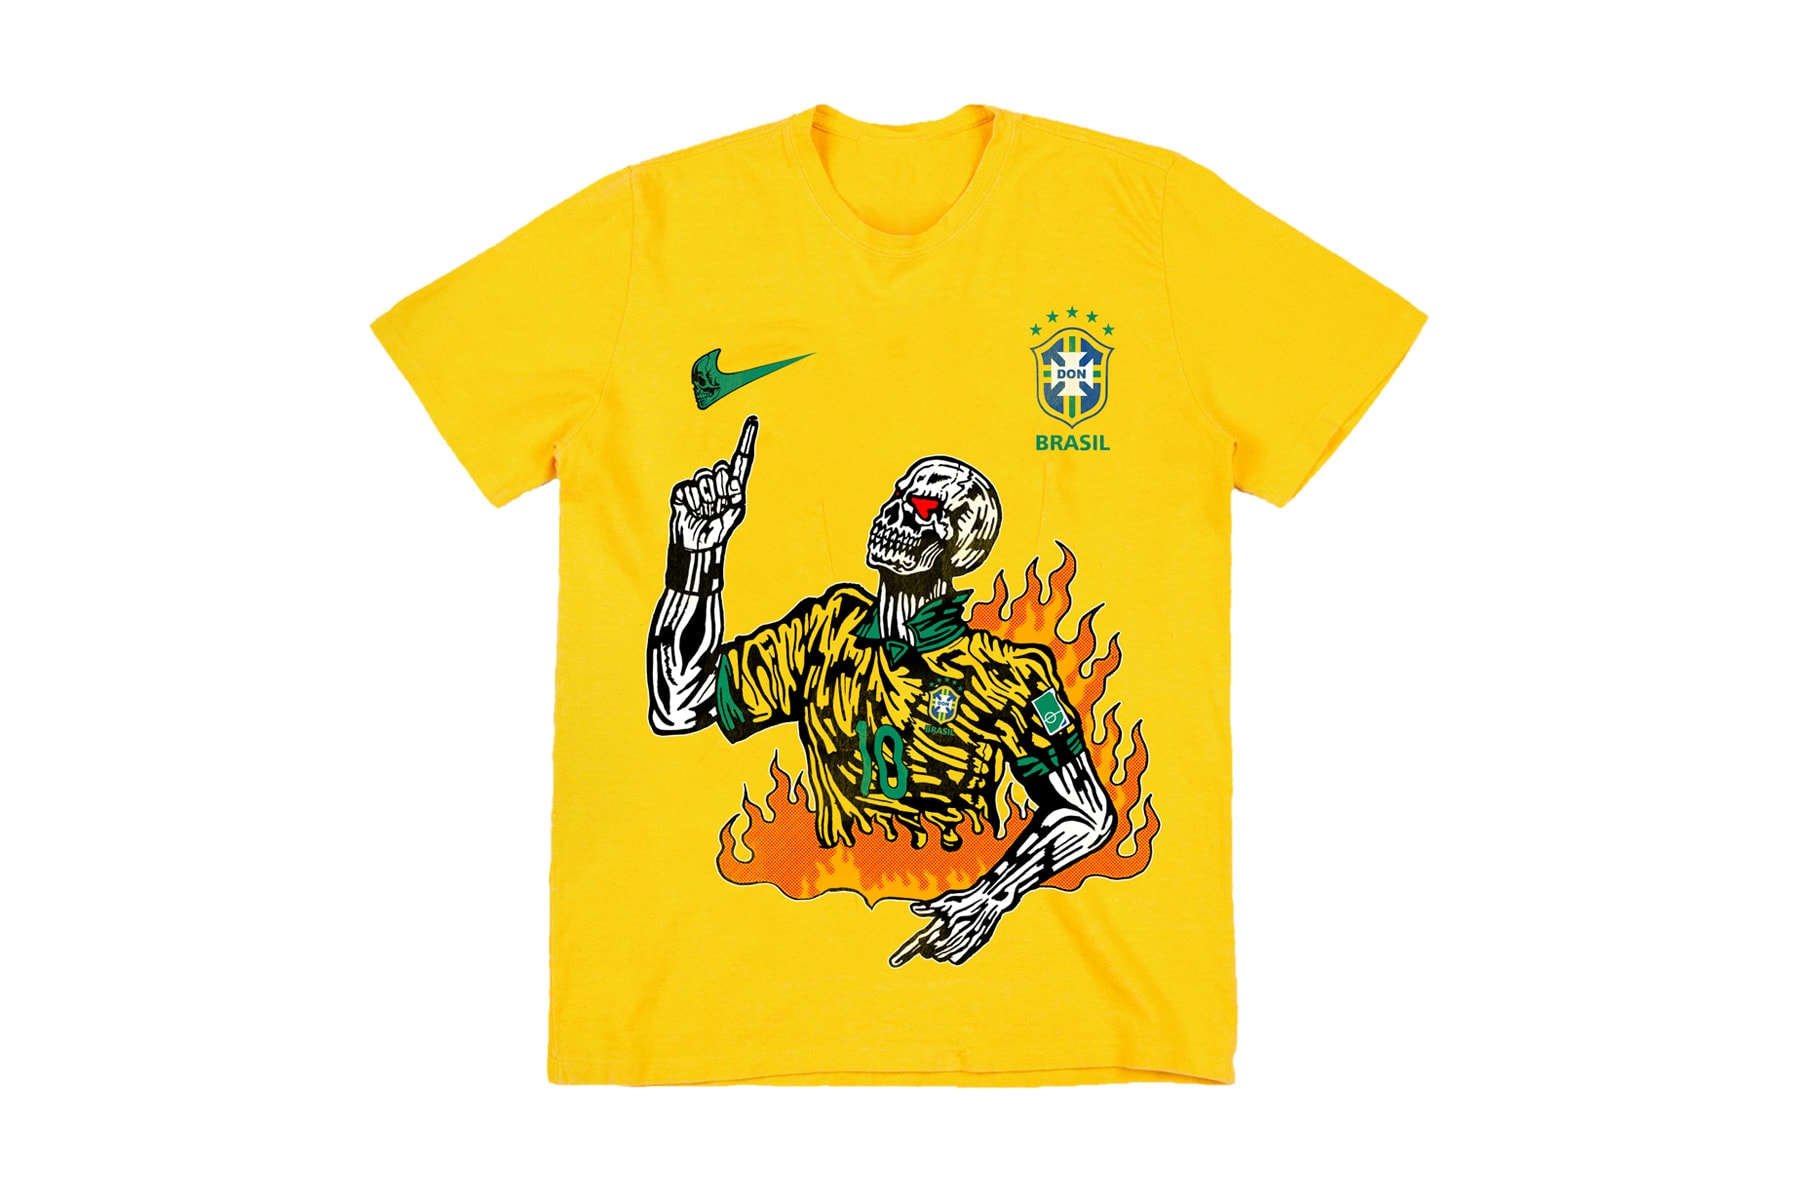 https://image-cdn.hypb.st/https%3A%2F%2Fhypebeast.com%2Fimage%2F2018%2F06%2Fwarren-lotas-world-cup-brazil-neymar-t-shirt-1.jpg?cbr=1&q=90